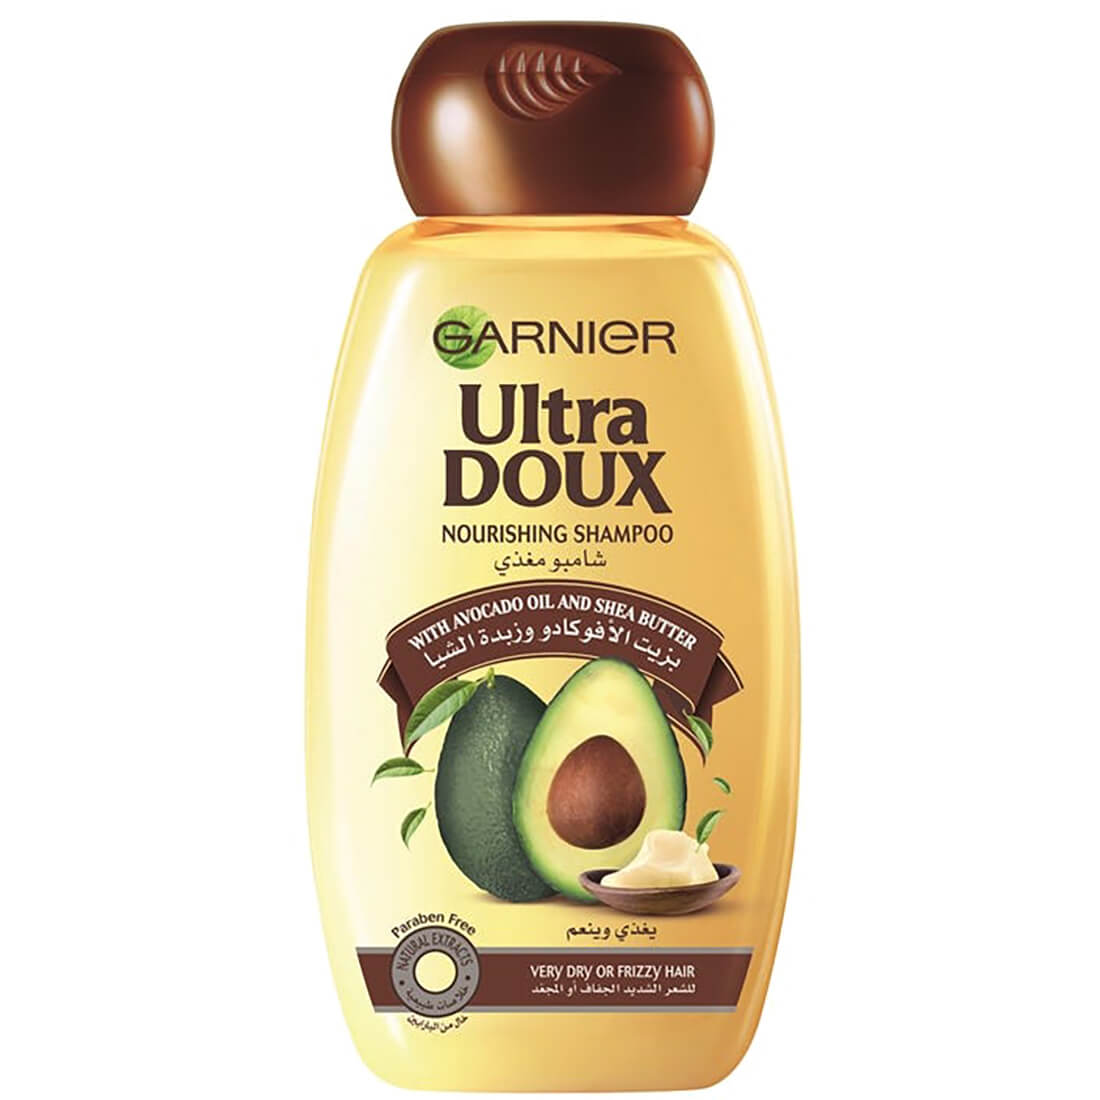 Ultra Doux Avocado Oil & Shea Butter Nourishing Shampoo